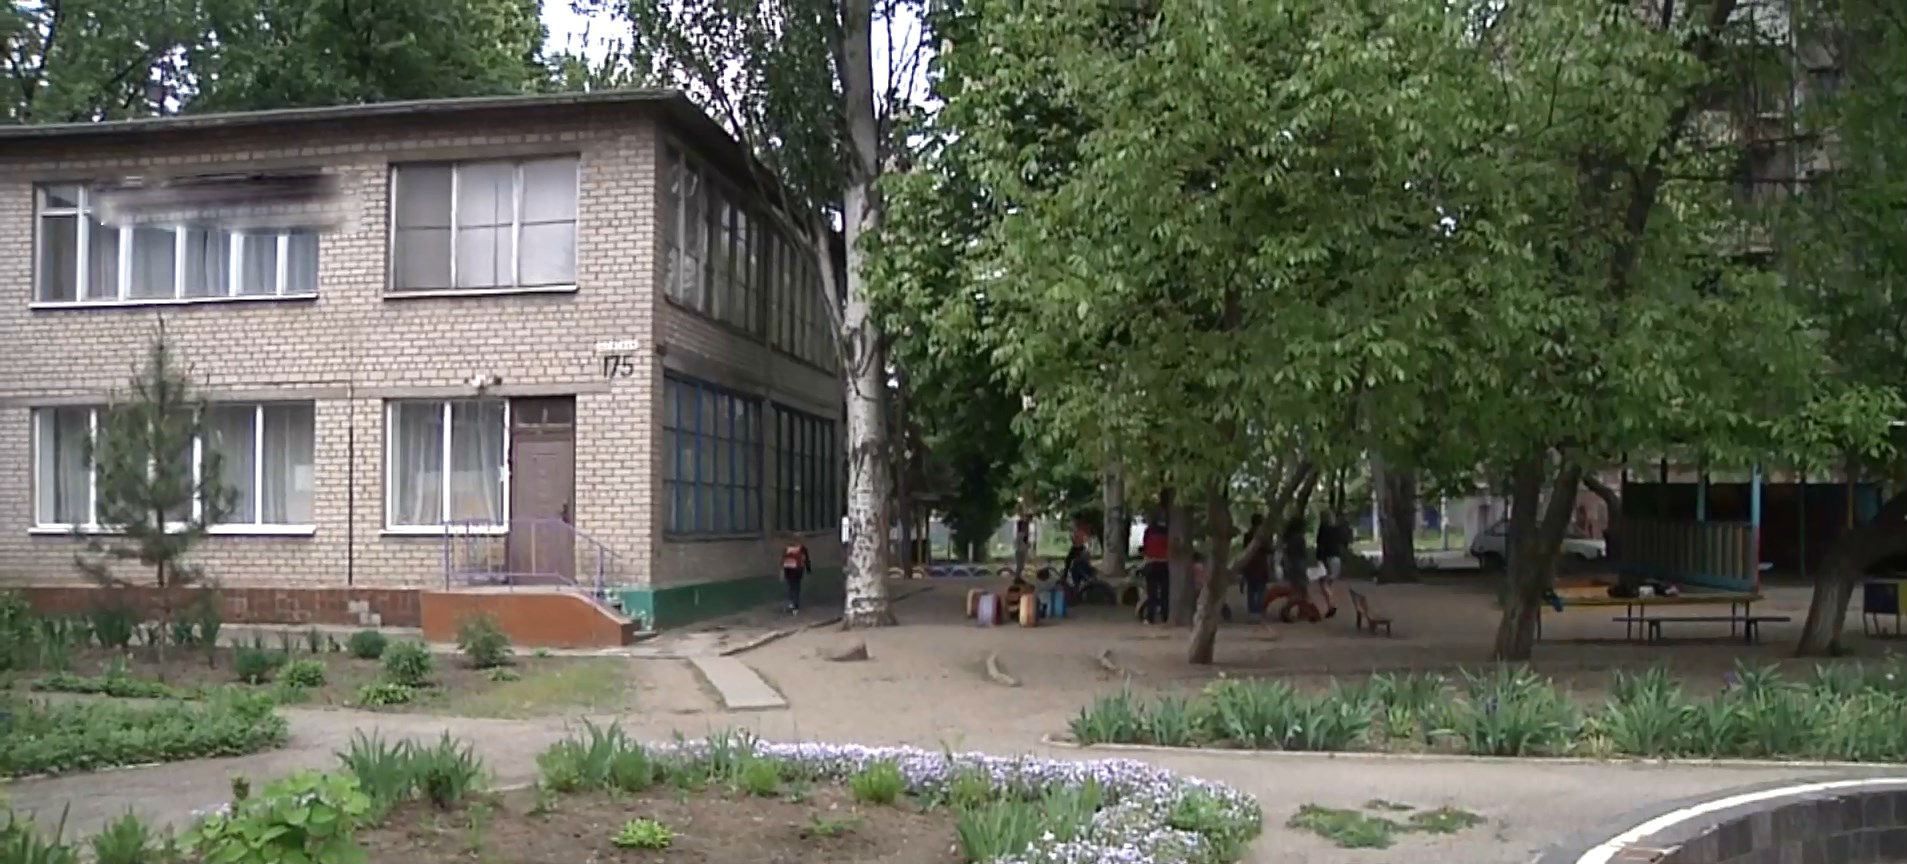 В Запорожье воспитательница садика силой таскала ребенка по площадке: детали инцидента